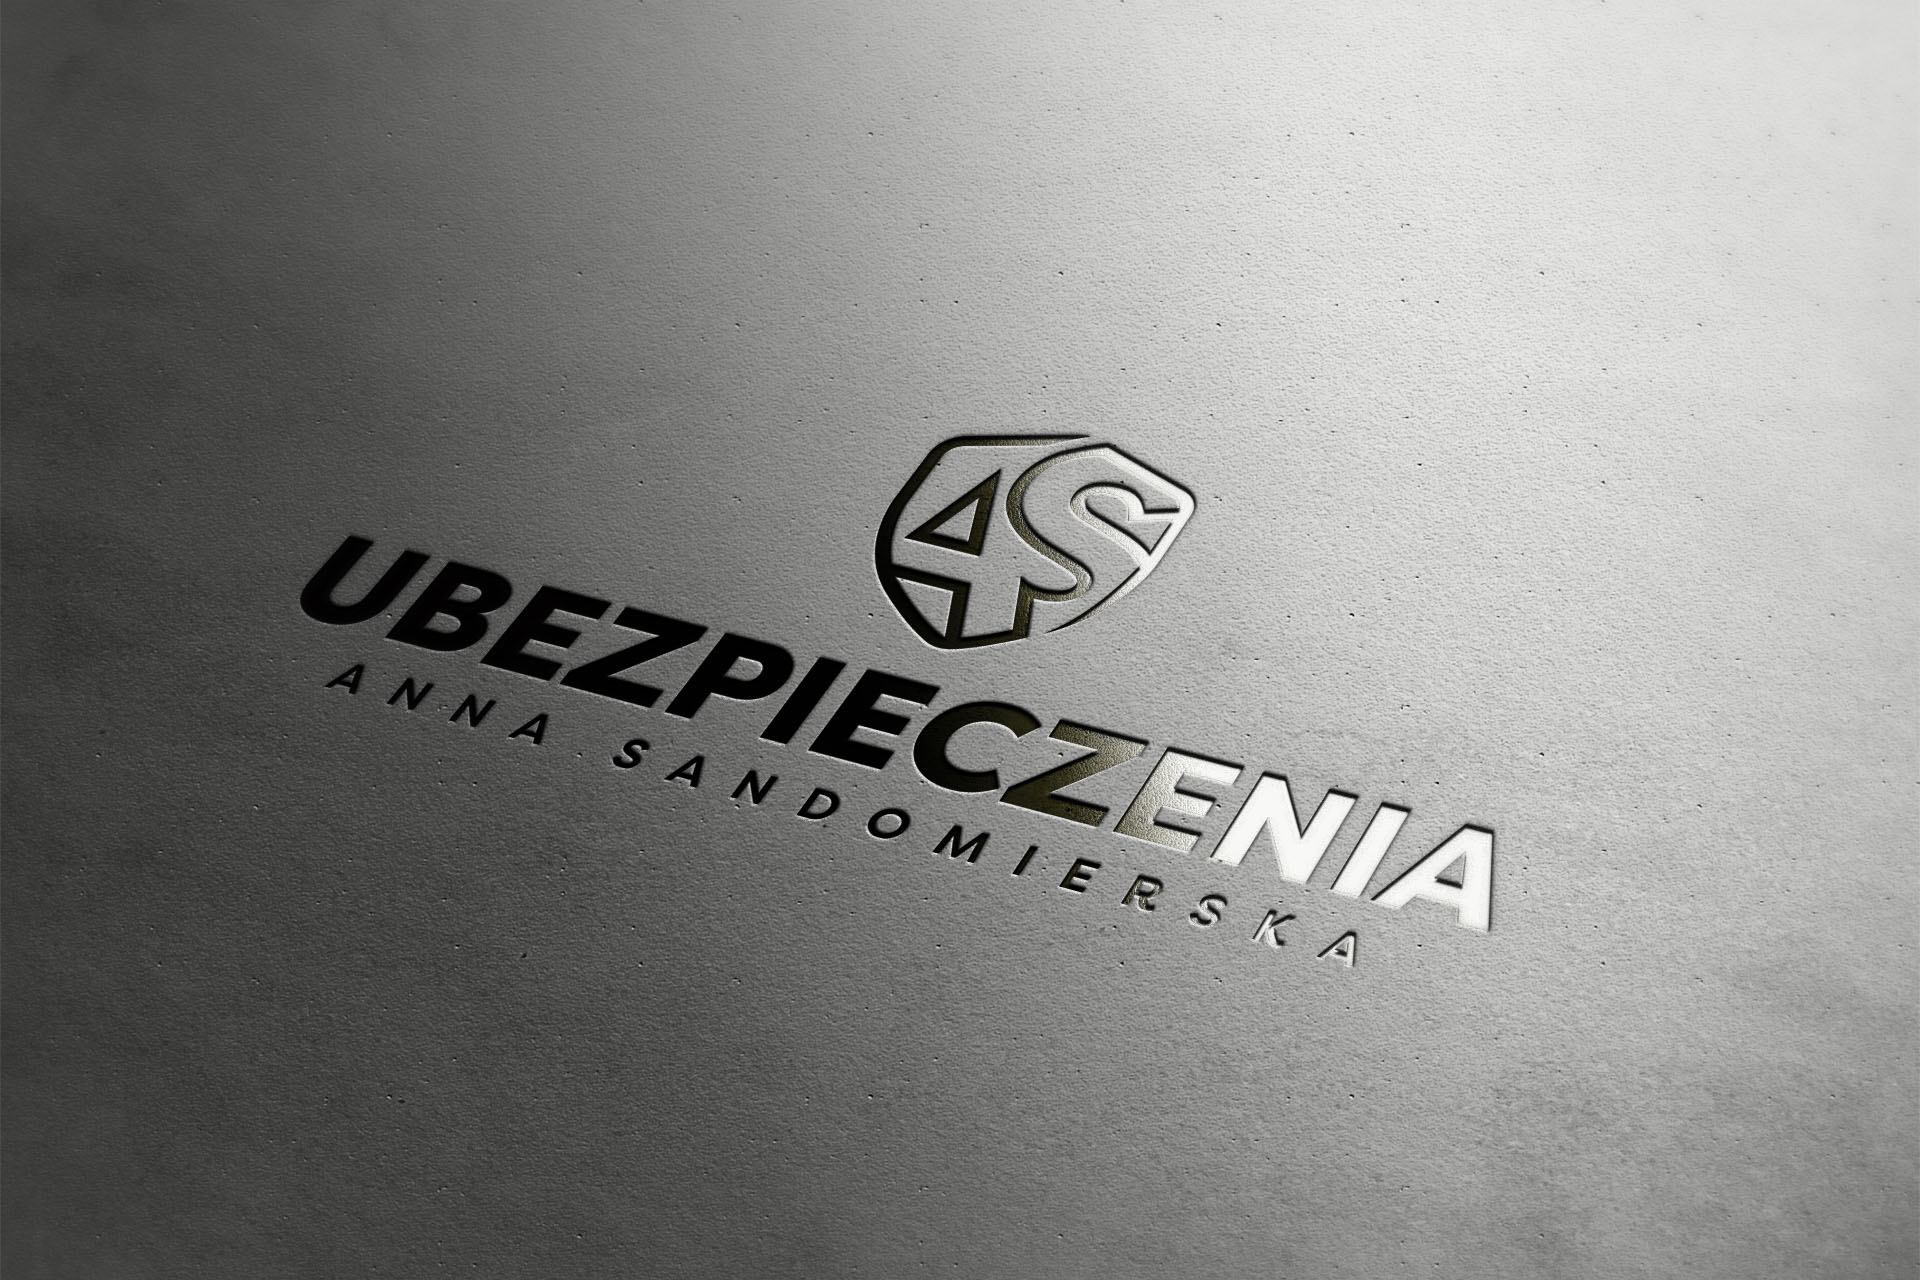 Ubezpieczenia Anna Sandomierska, Logo